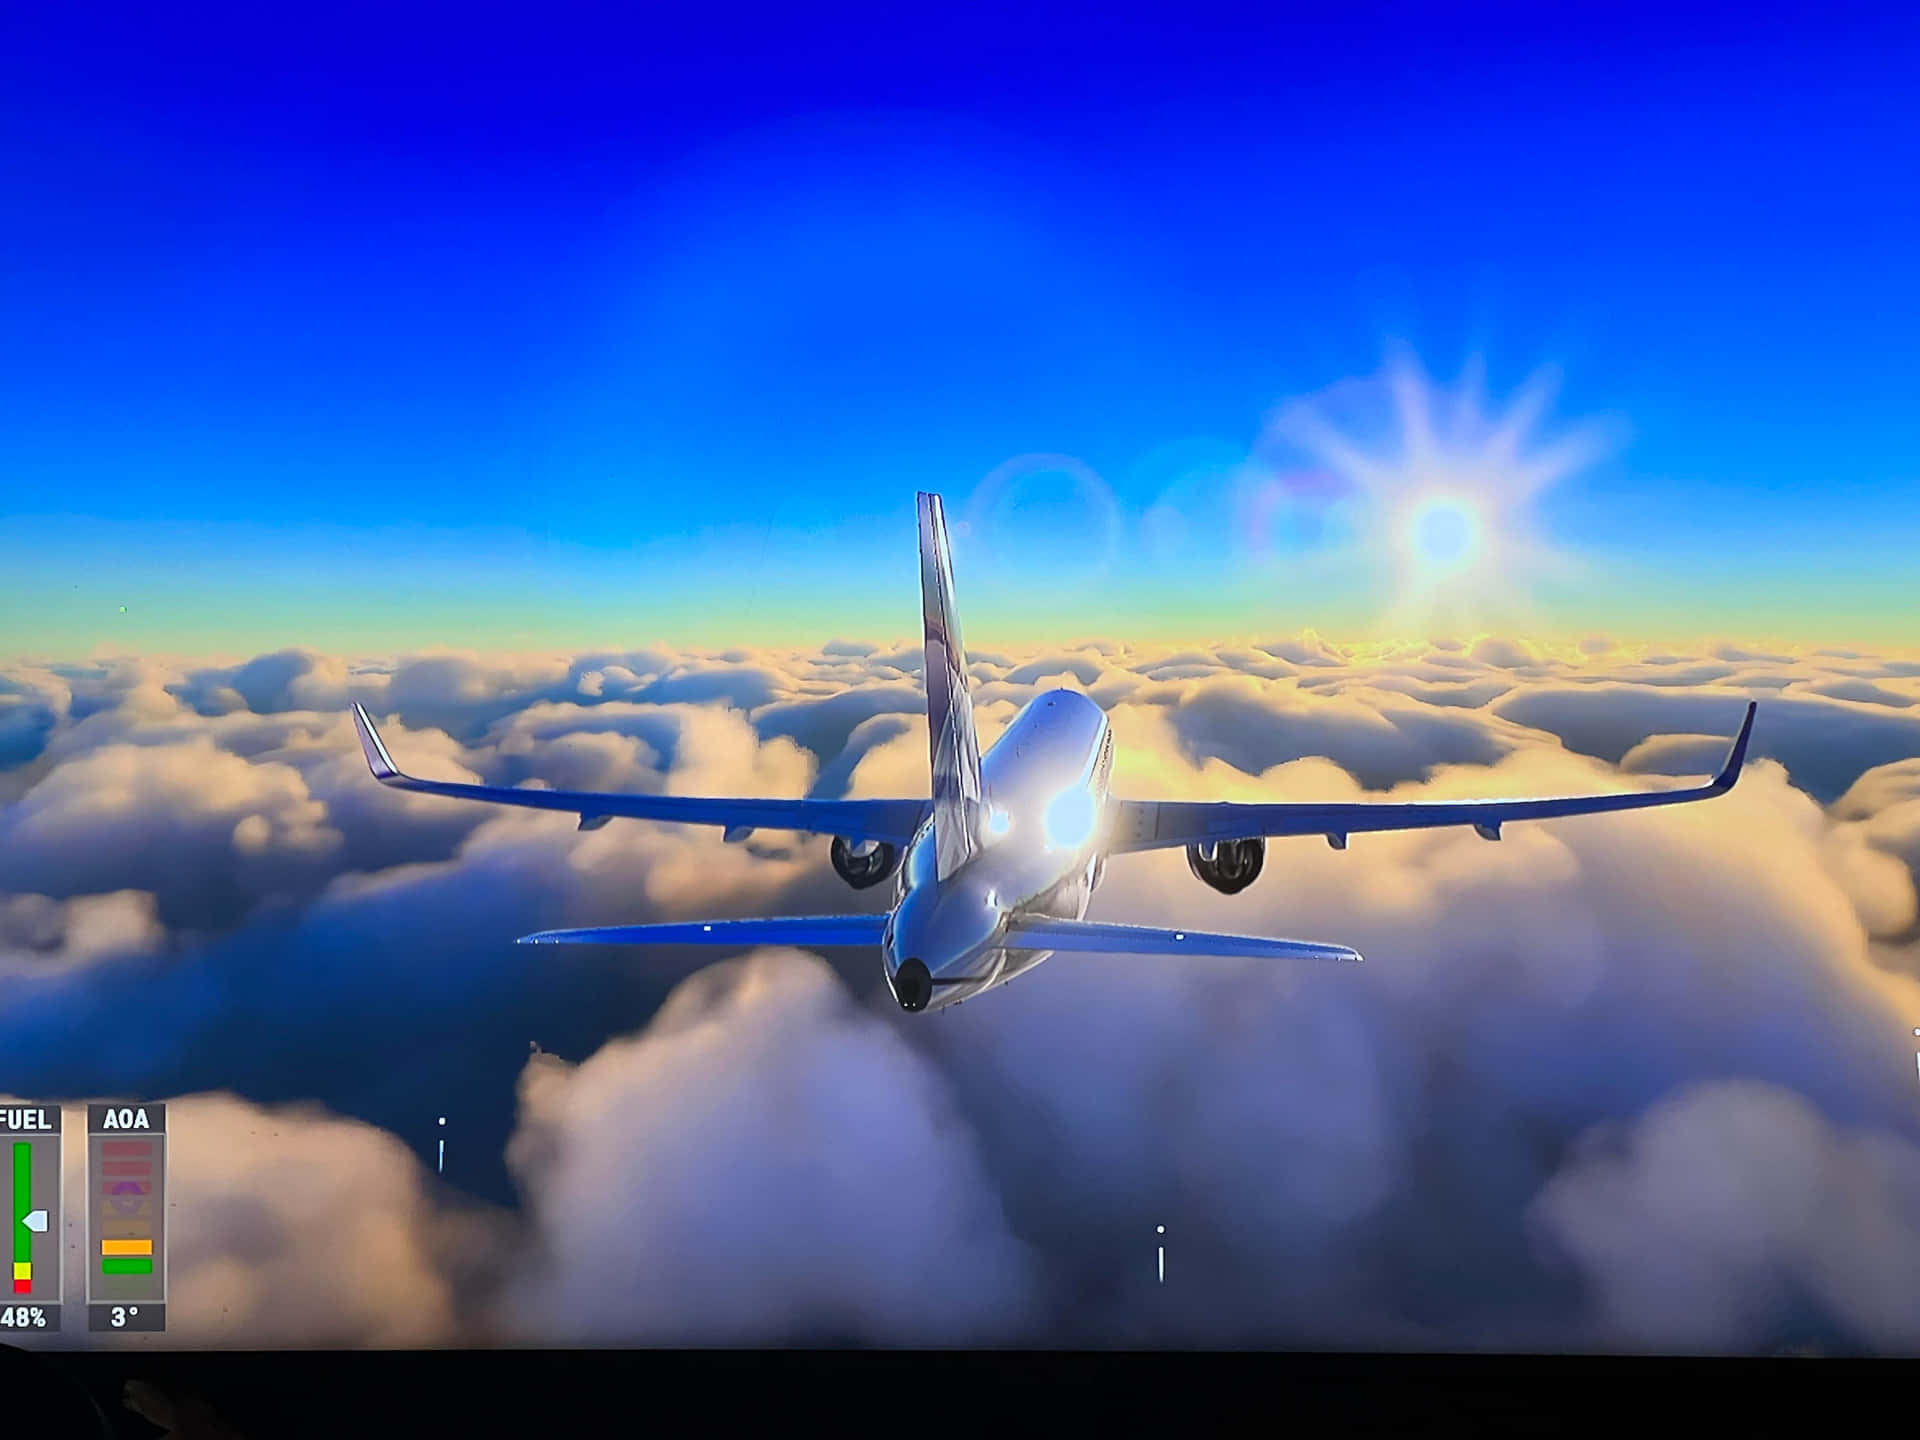 Fondode Pantalla De Microsoft Flight Simulator En 4k: Captura De Pantalla Real Del Juego